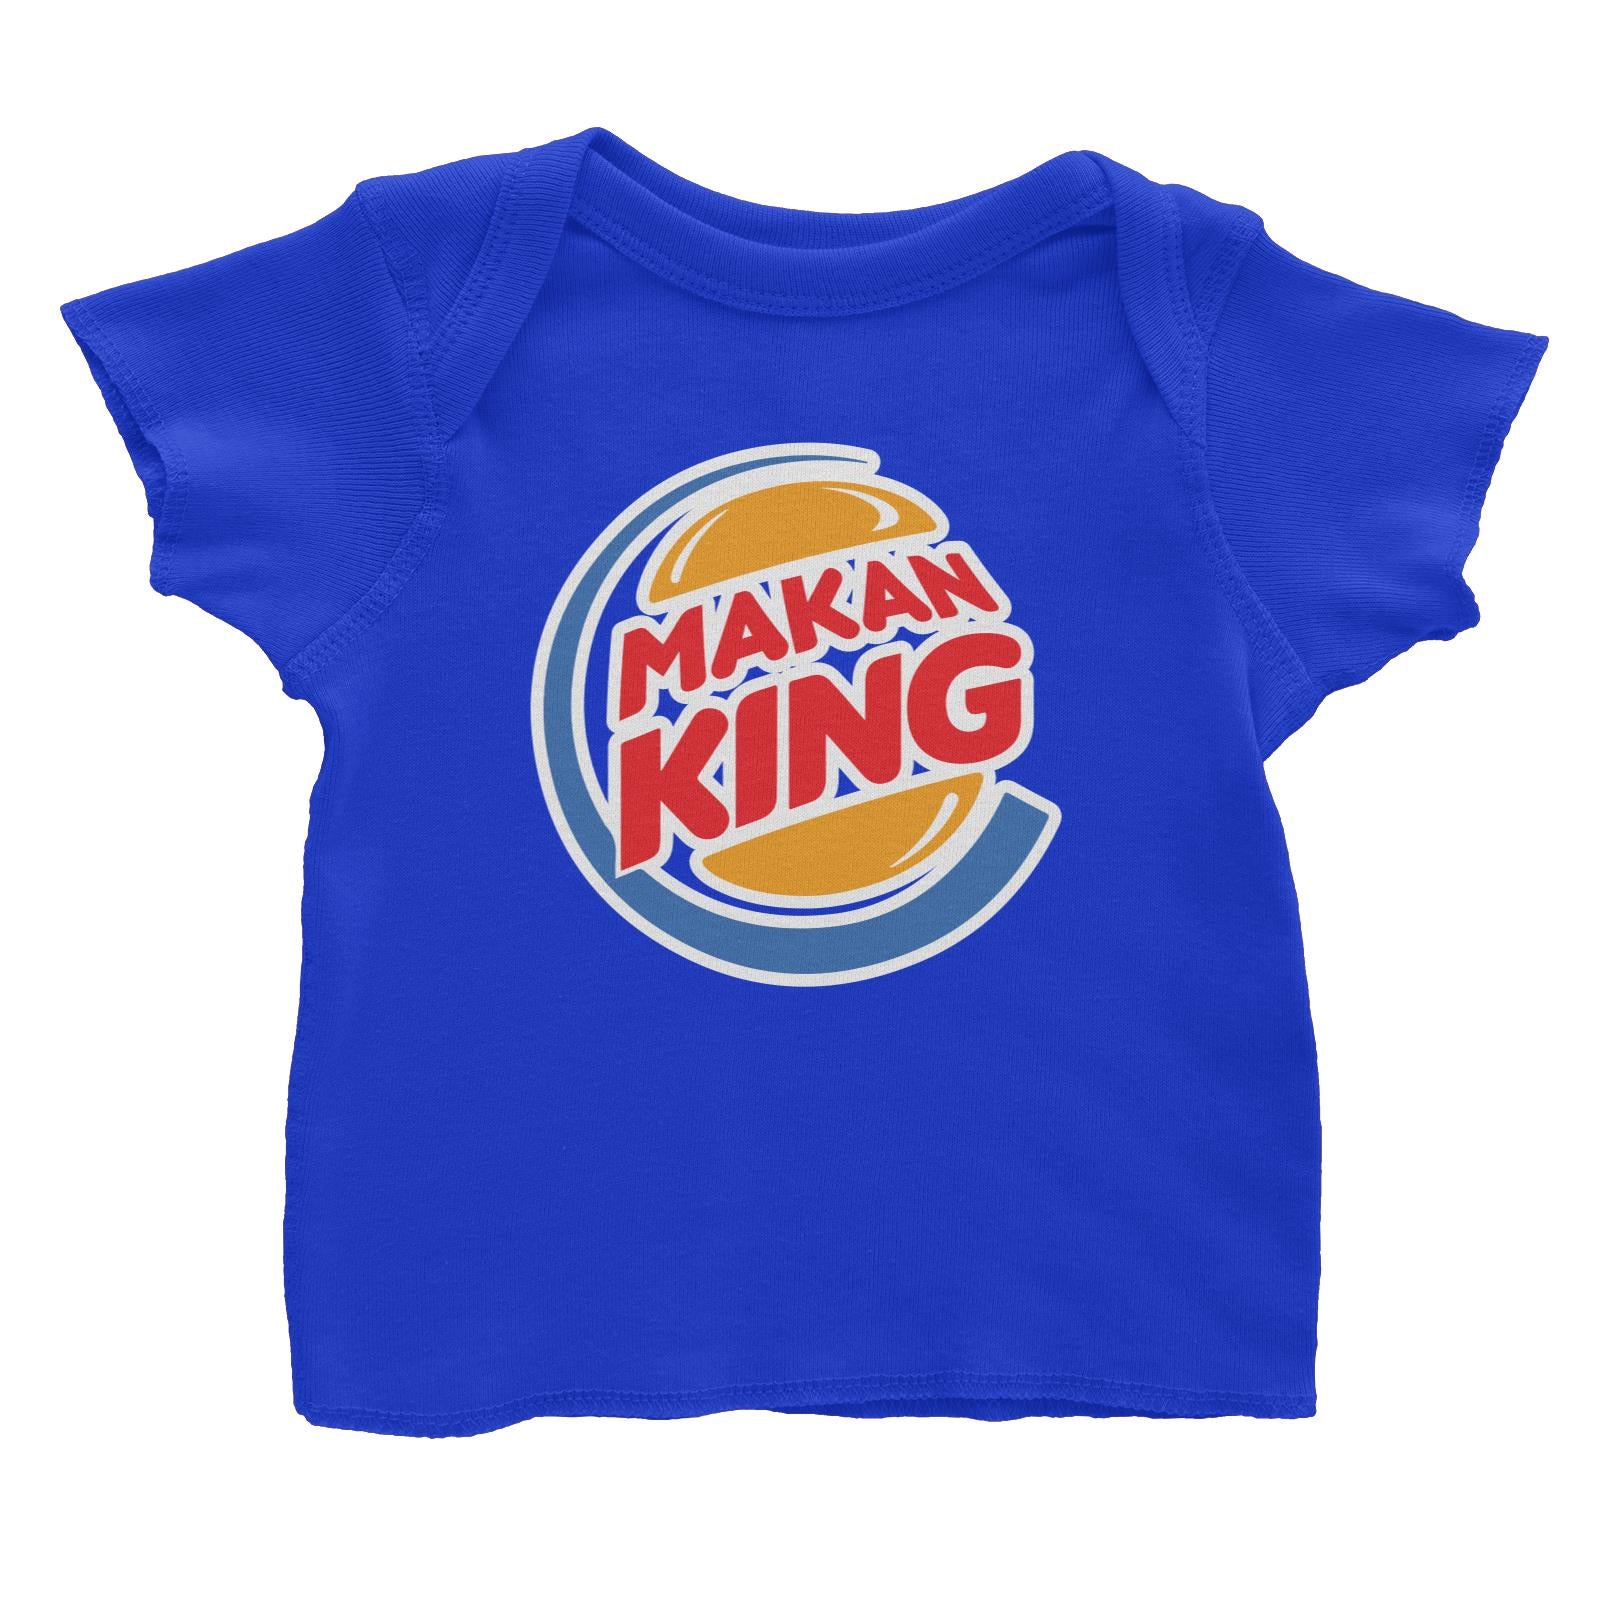 Slang Statement Makan King Baby T-Shirt